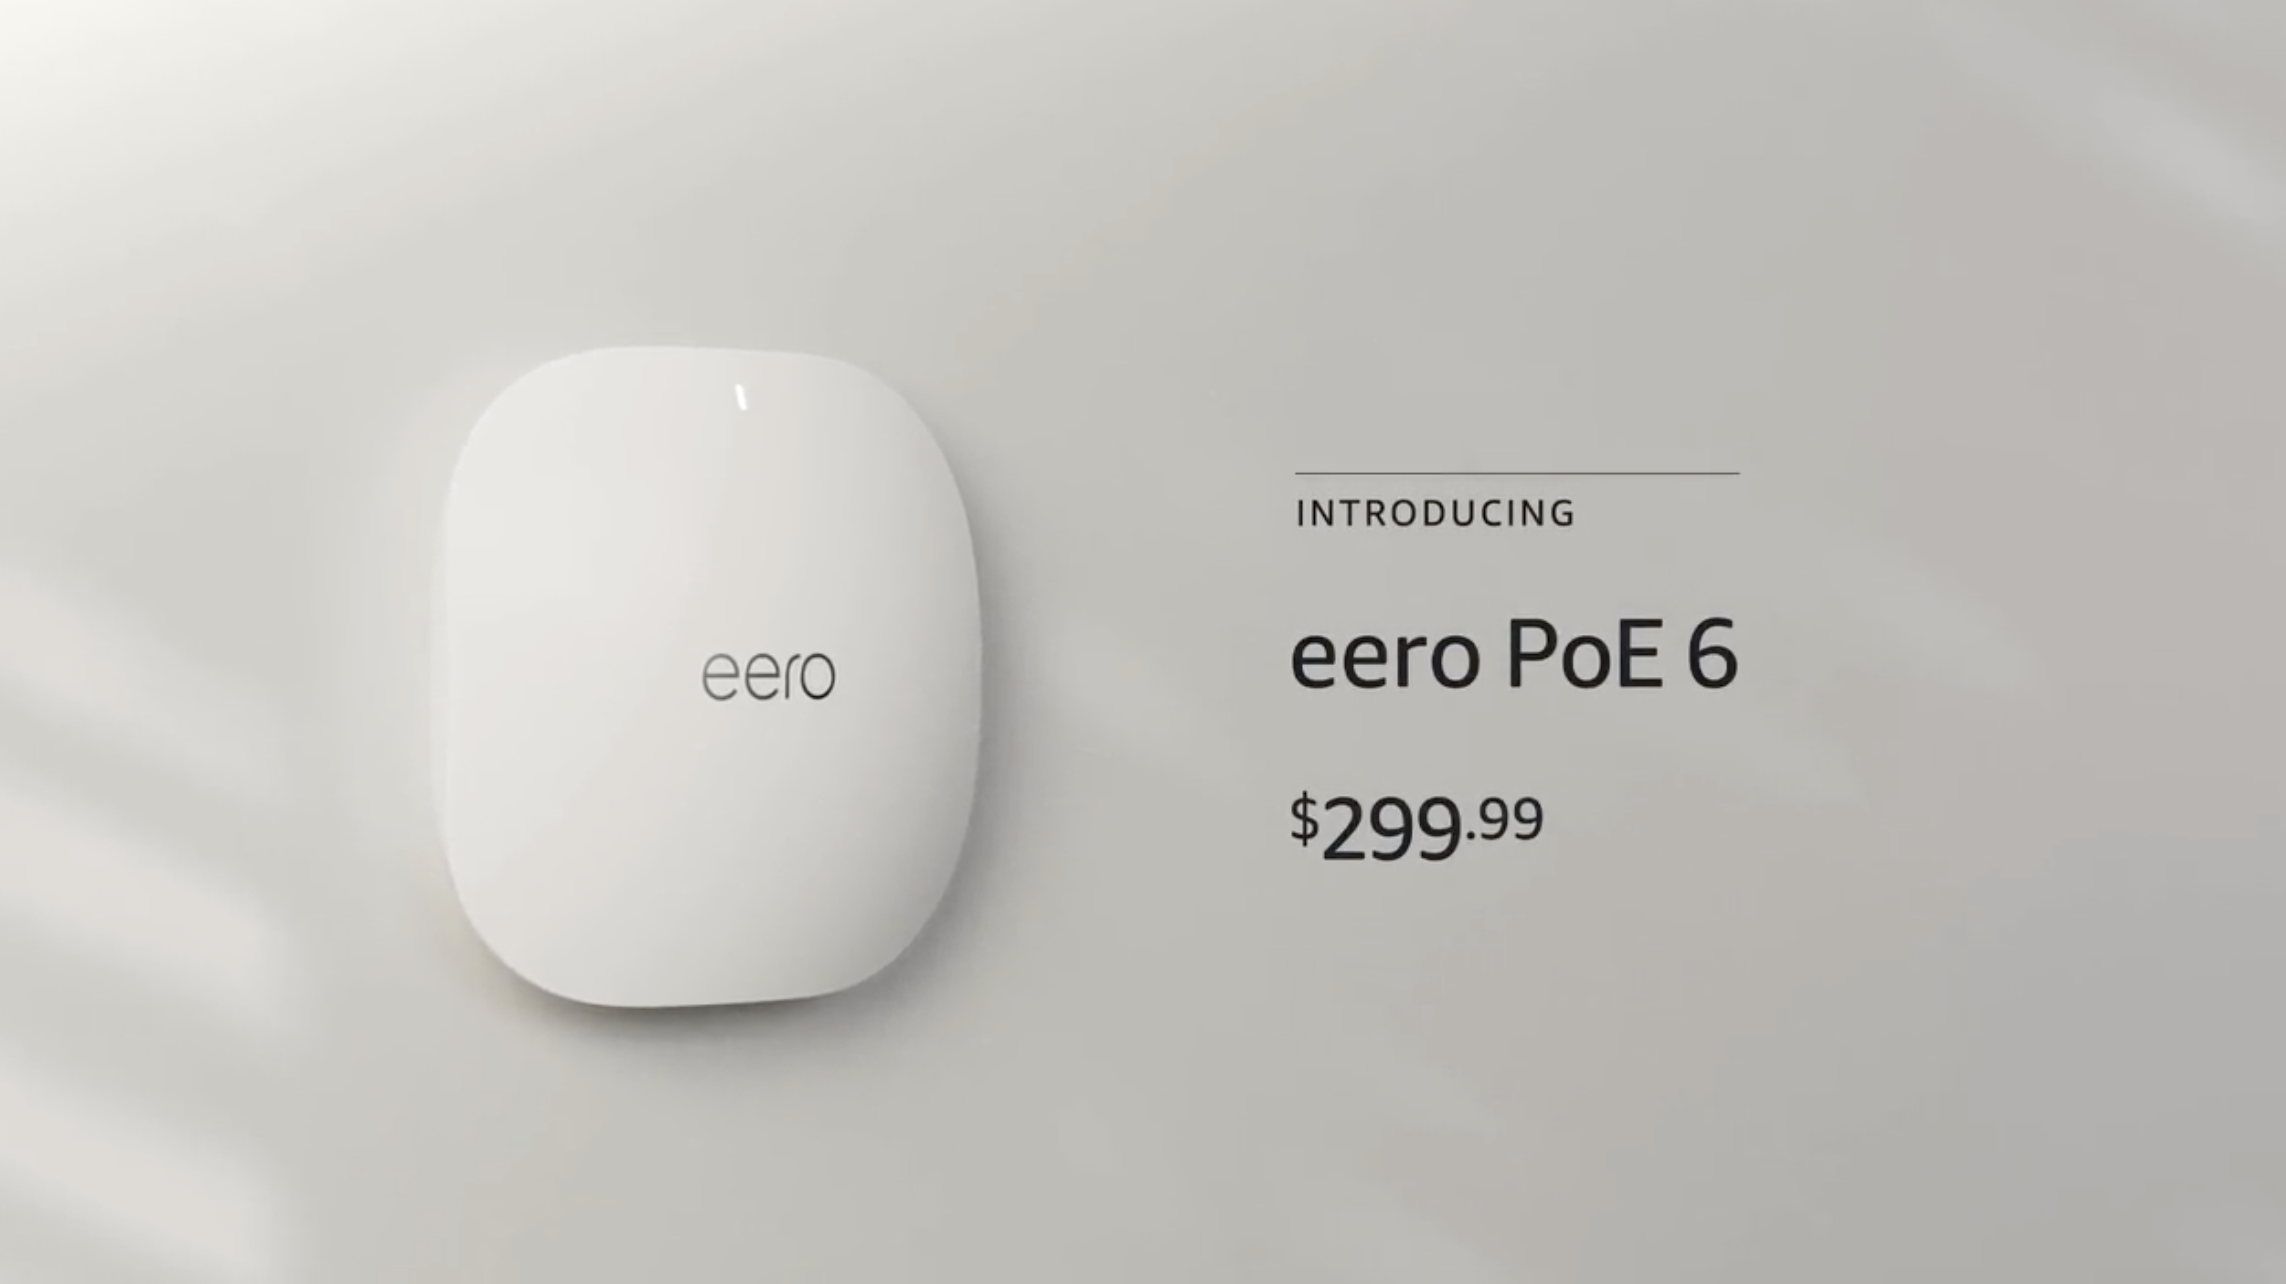 Eero PoE 6 at Amazon Event